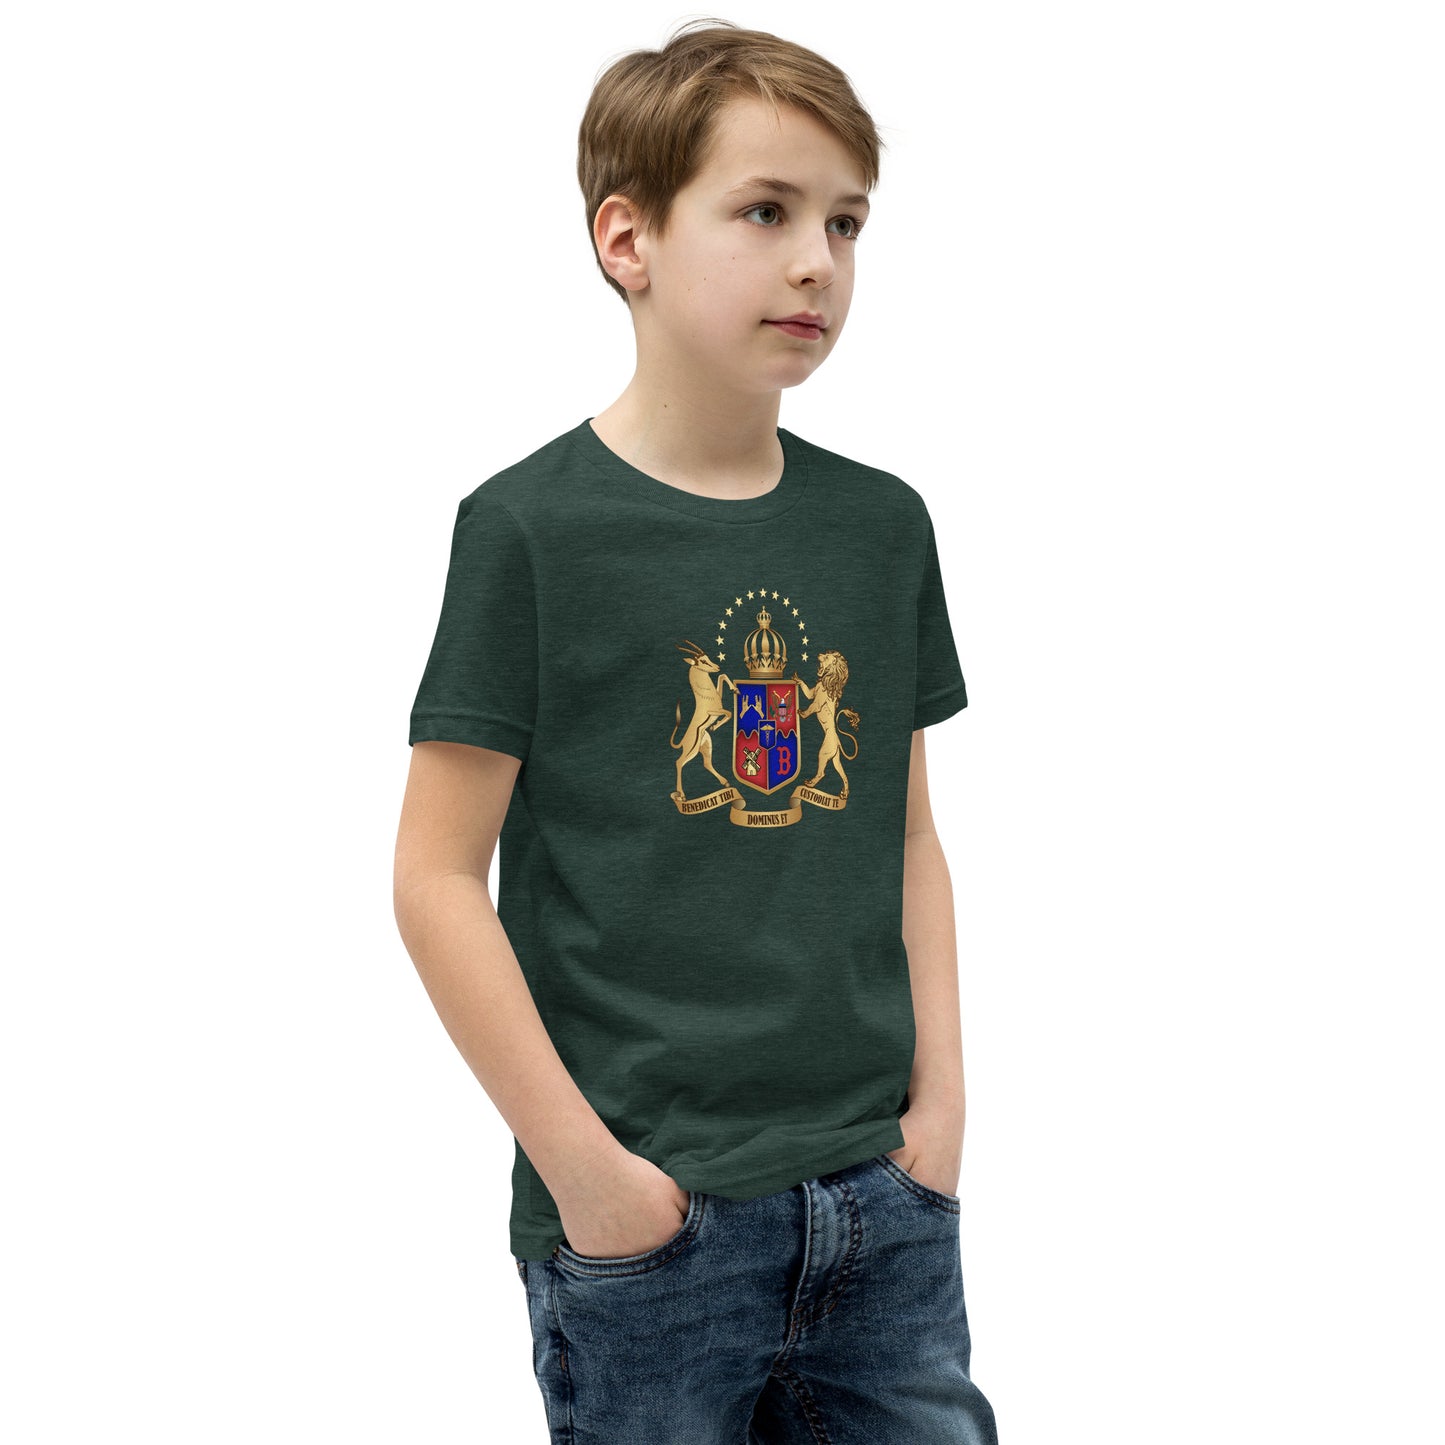 Katz Family Youth Short Sleeve T-Shirt